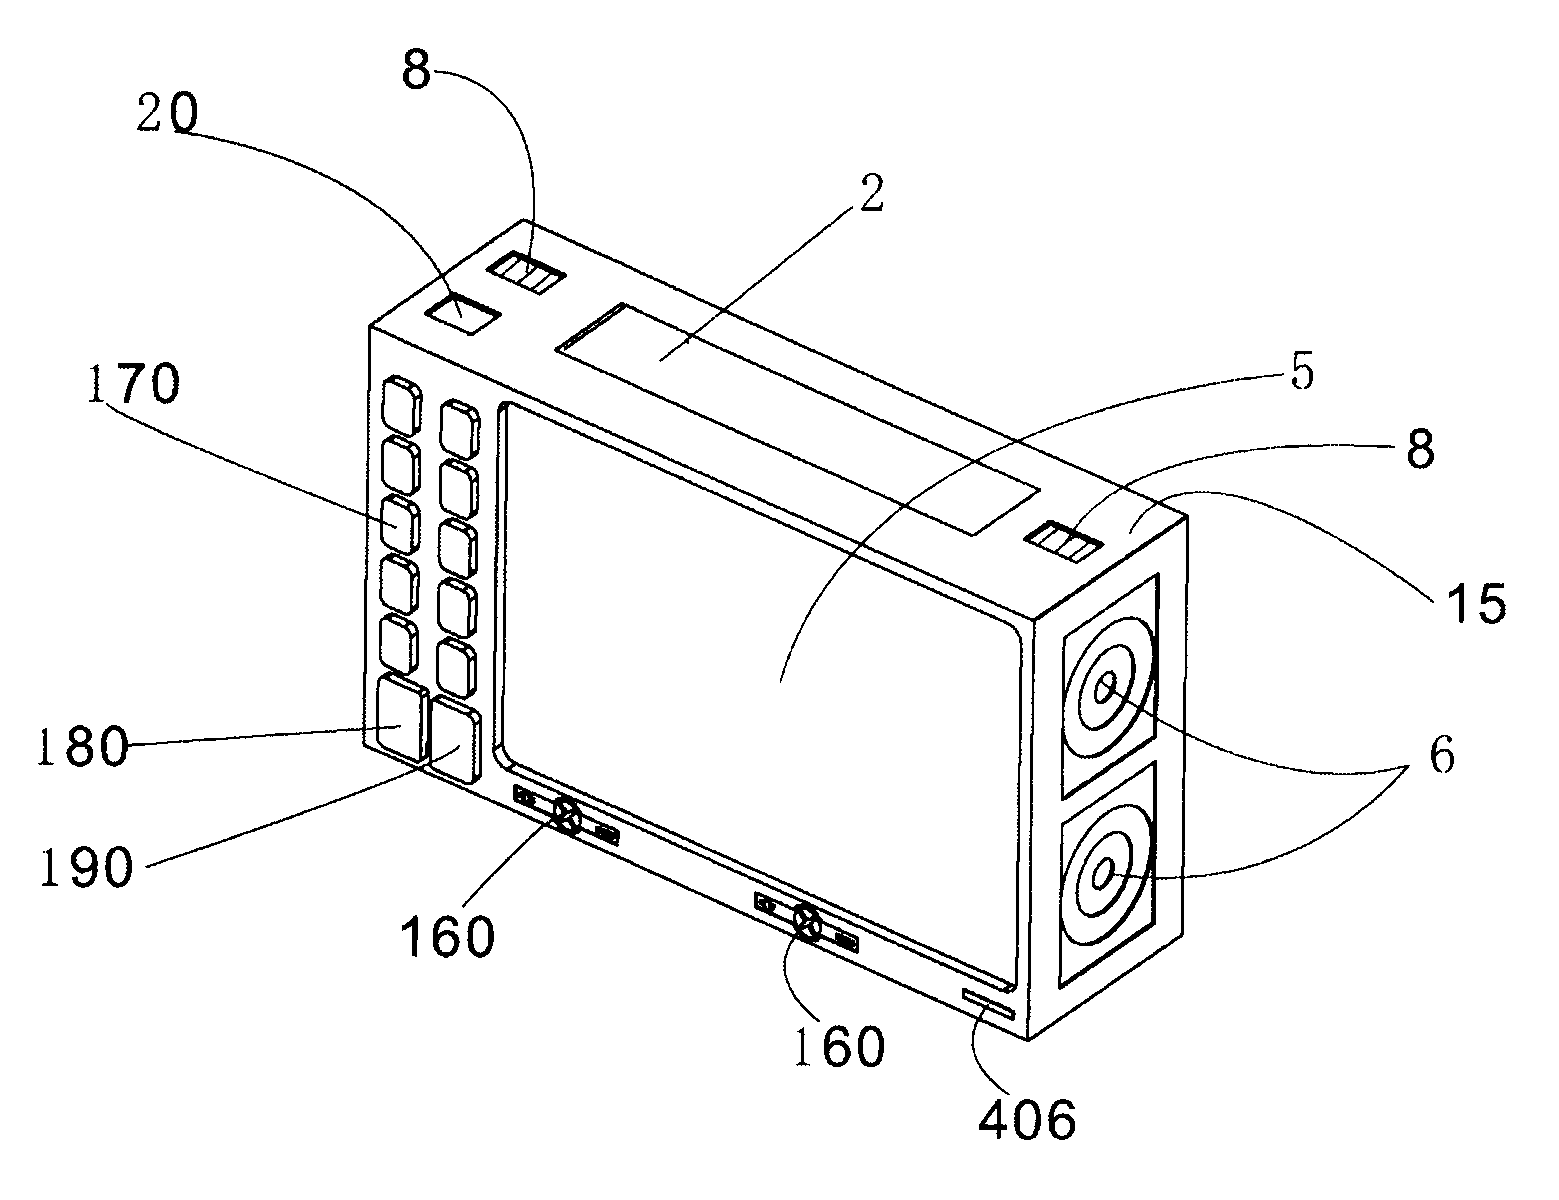 Portable integrative stereoscopic video multimedia device